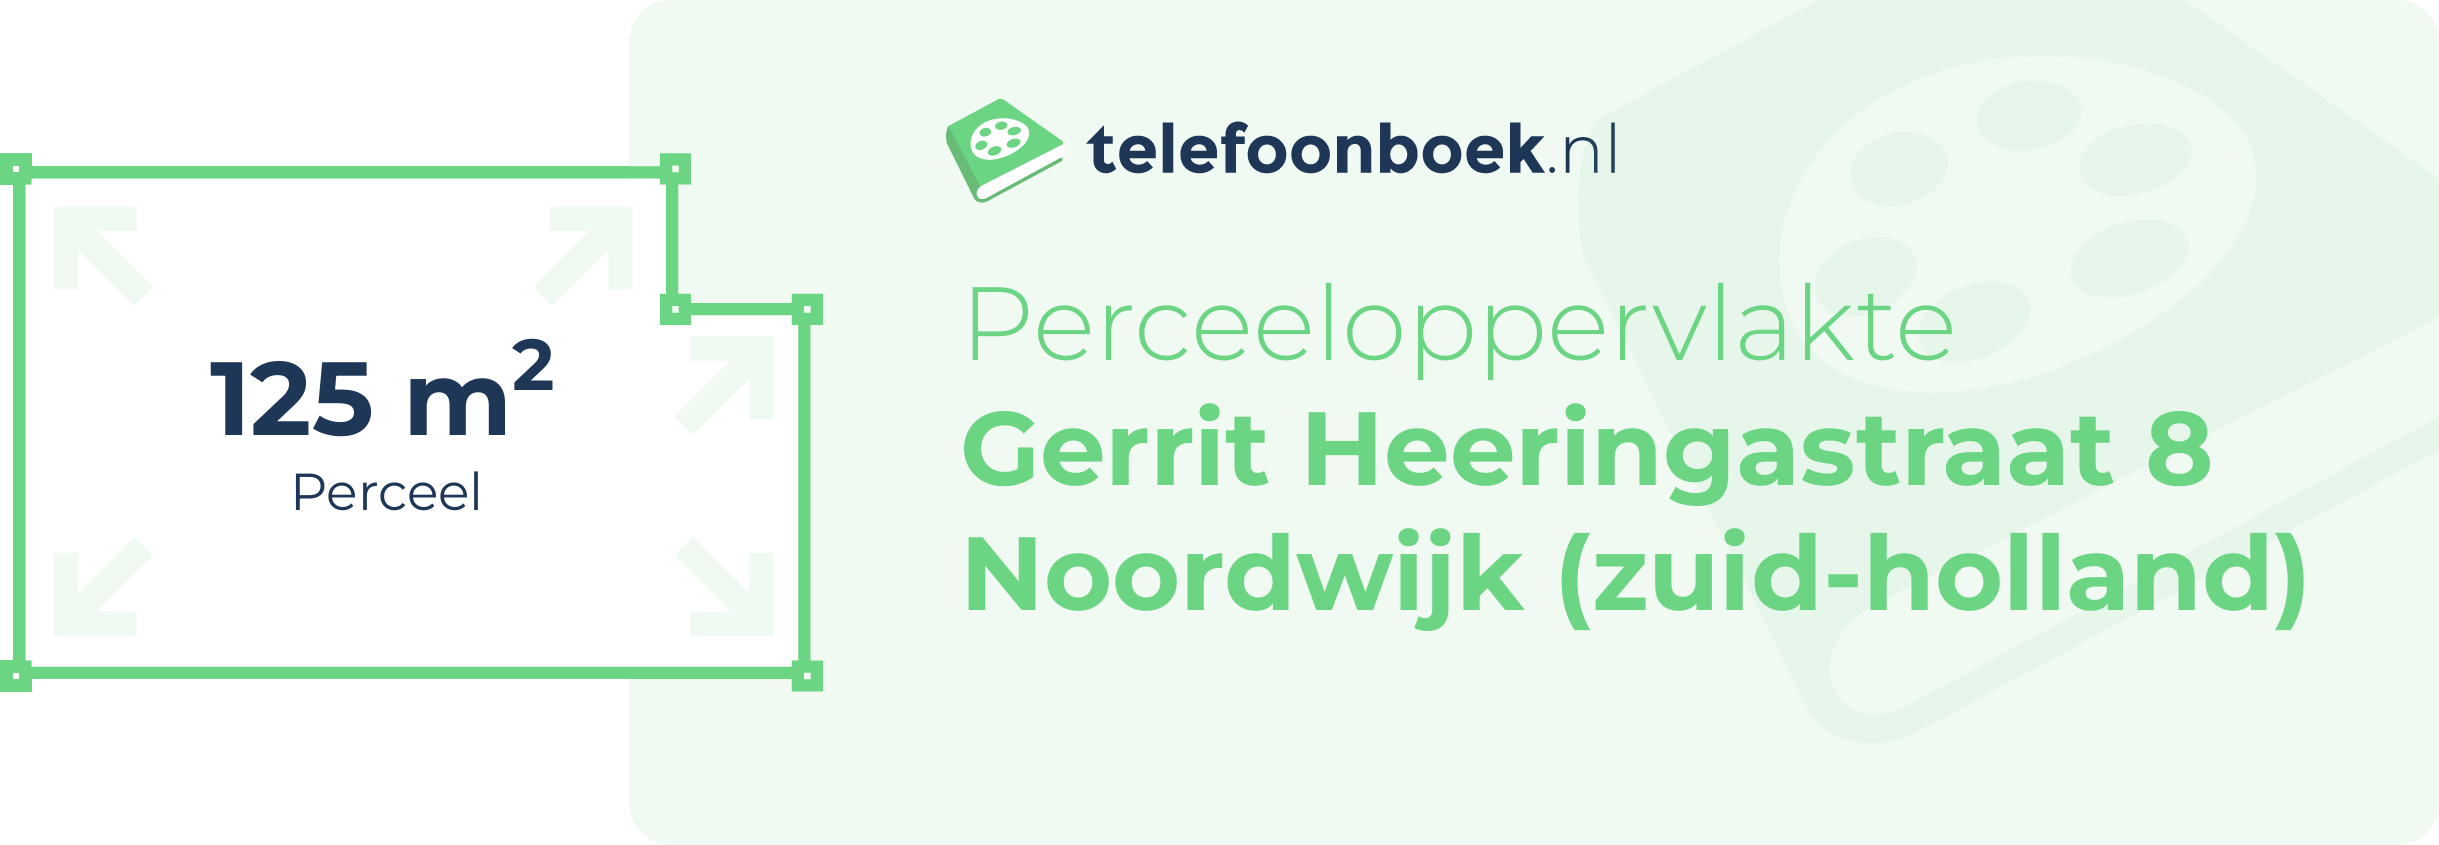 Perceeloppervlakte Gerrit Heeringastraat 8 Noordwijk (Zuid-Holland)